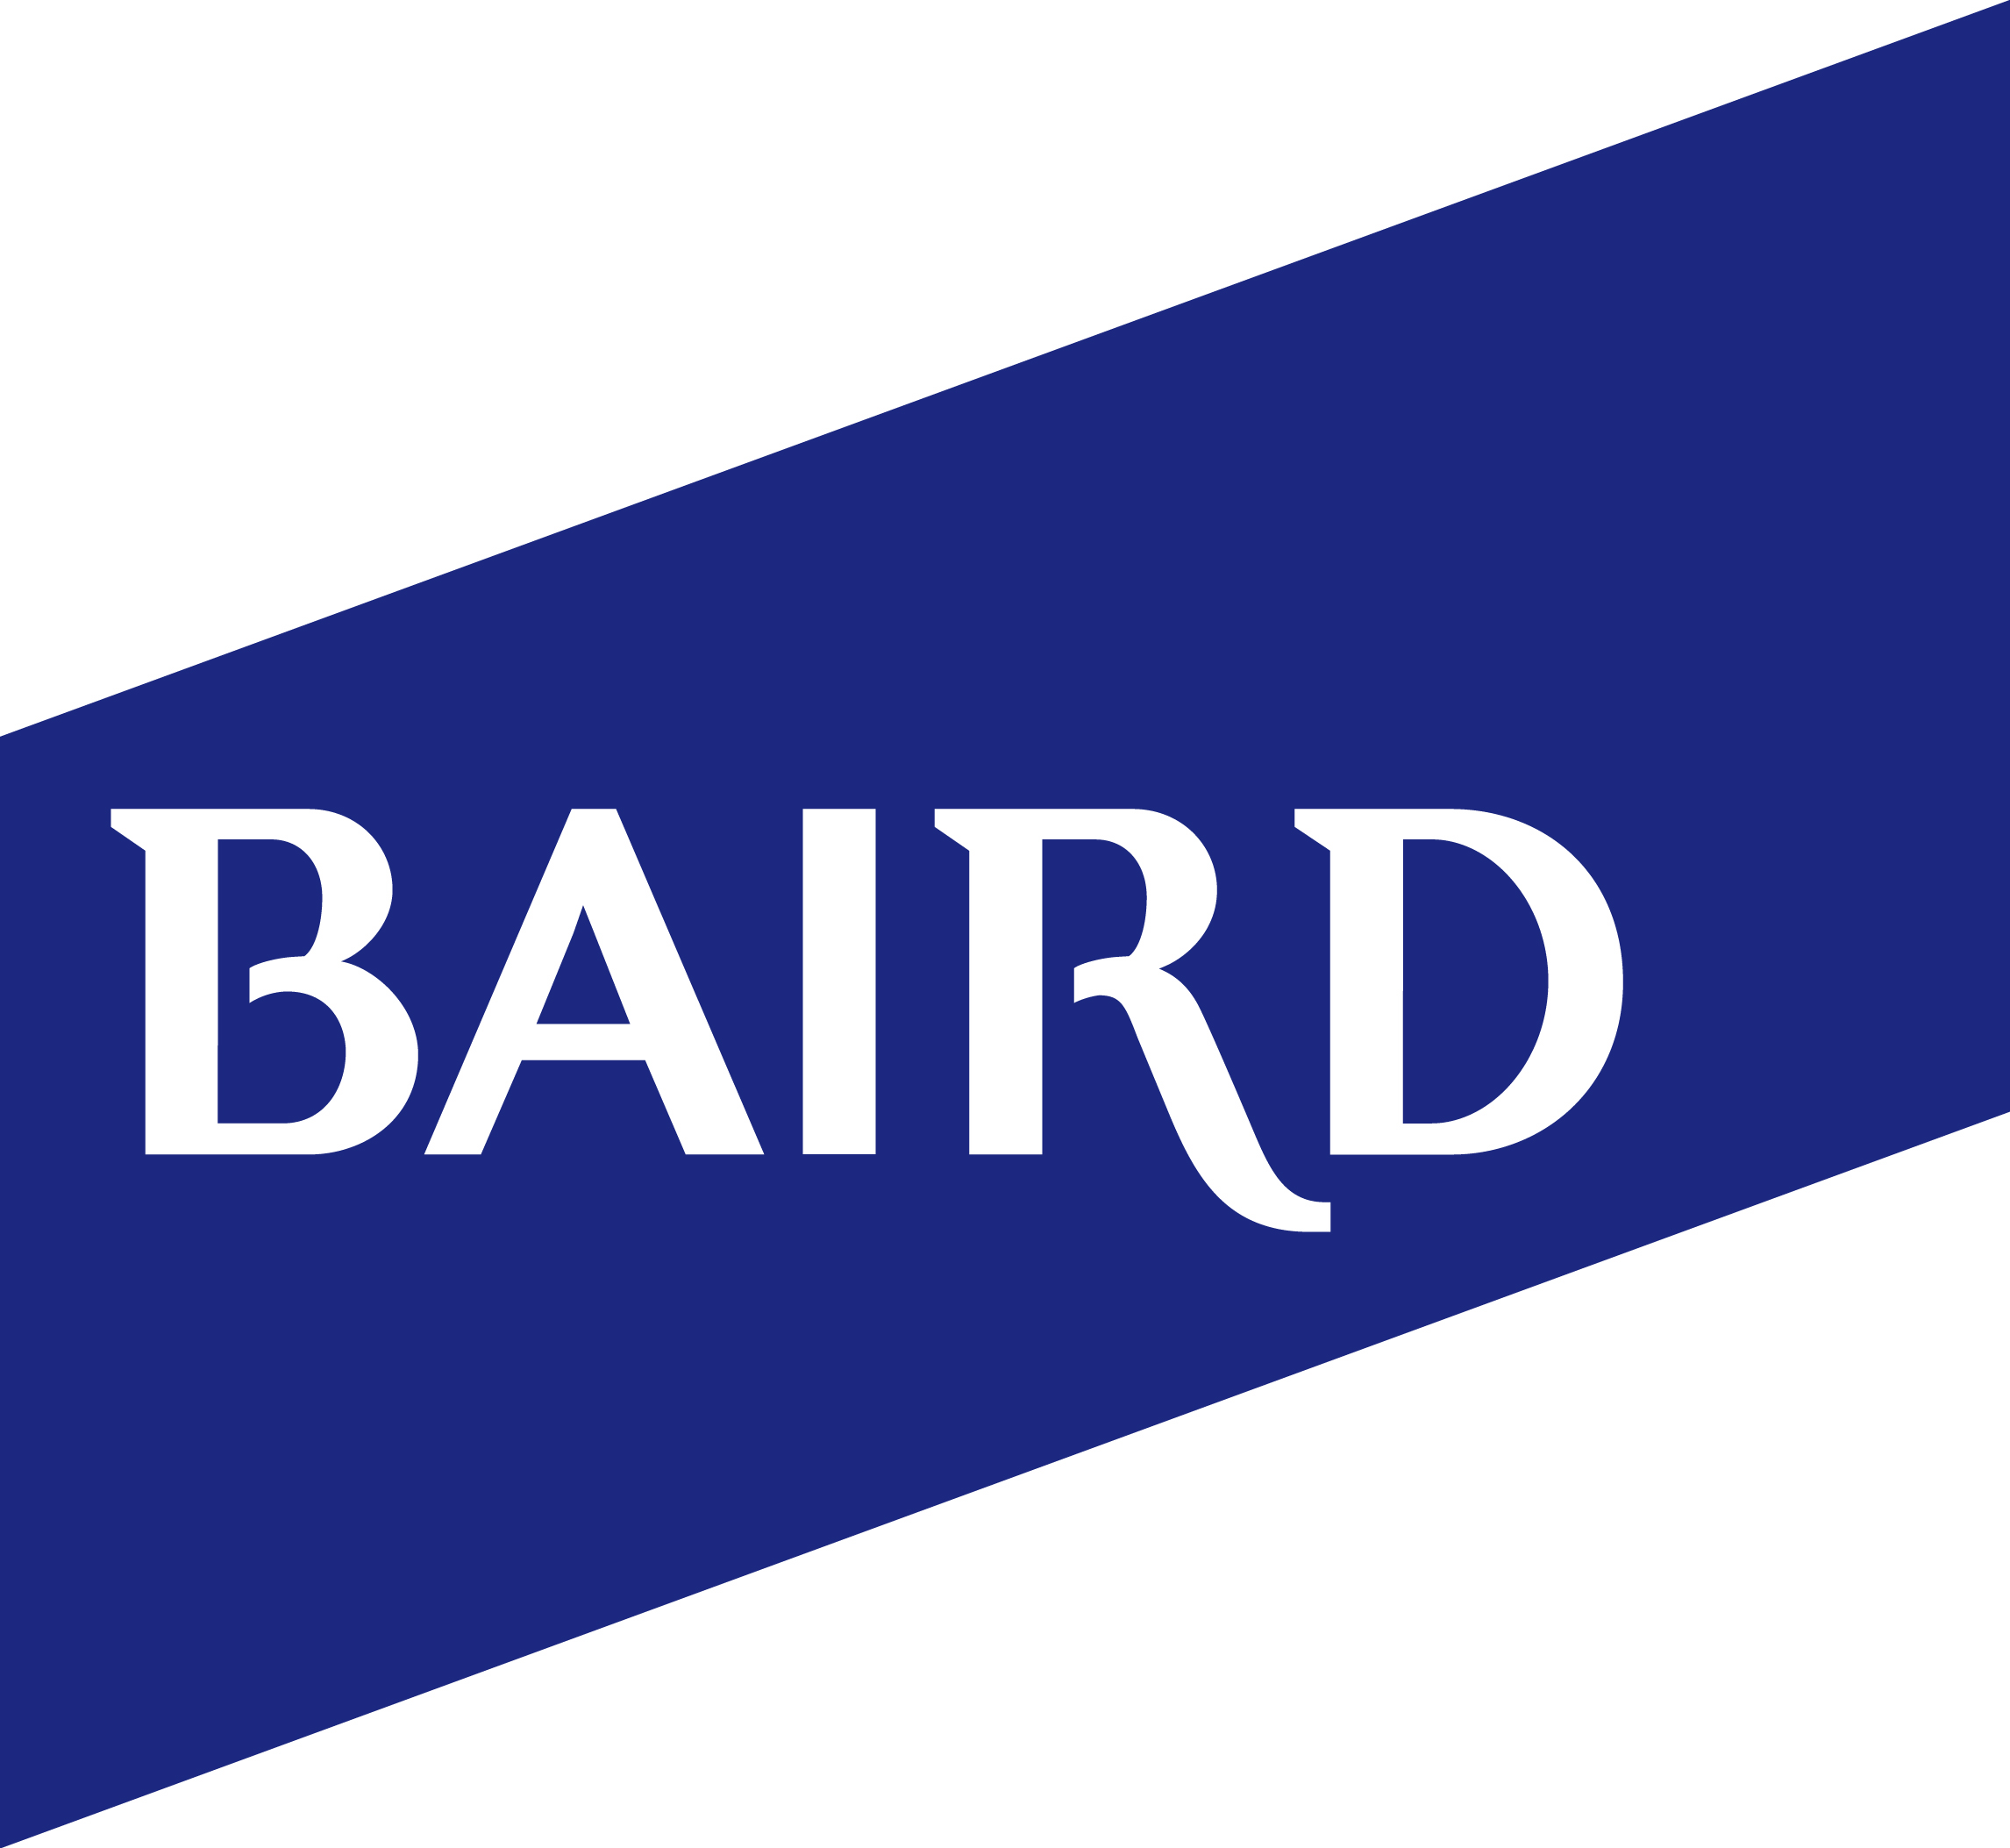 baird_logo.jpg